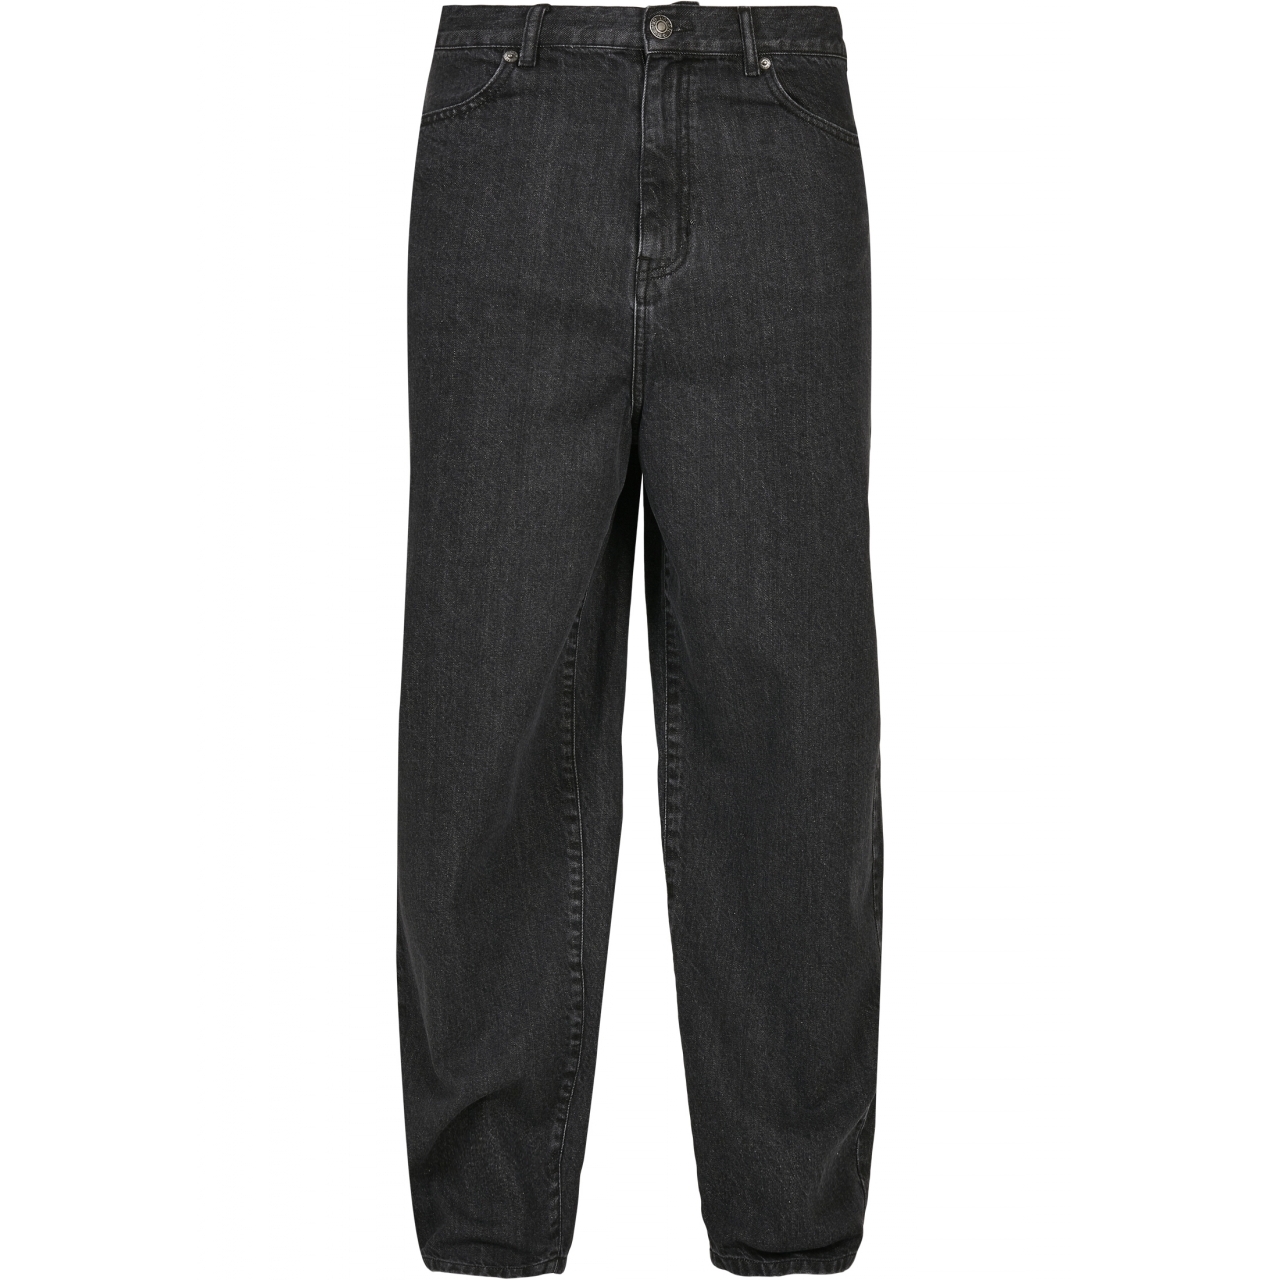 Džíny Urban Classics 90s Jeans - černé, 30